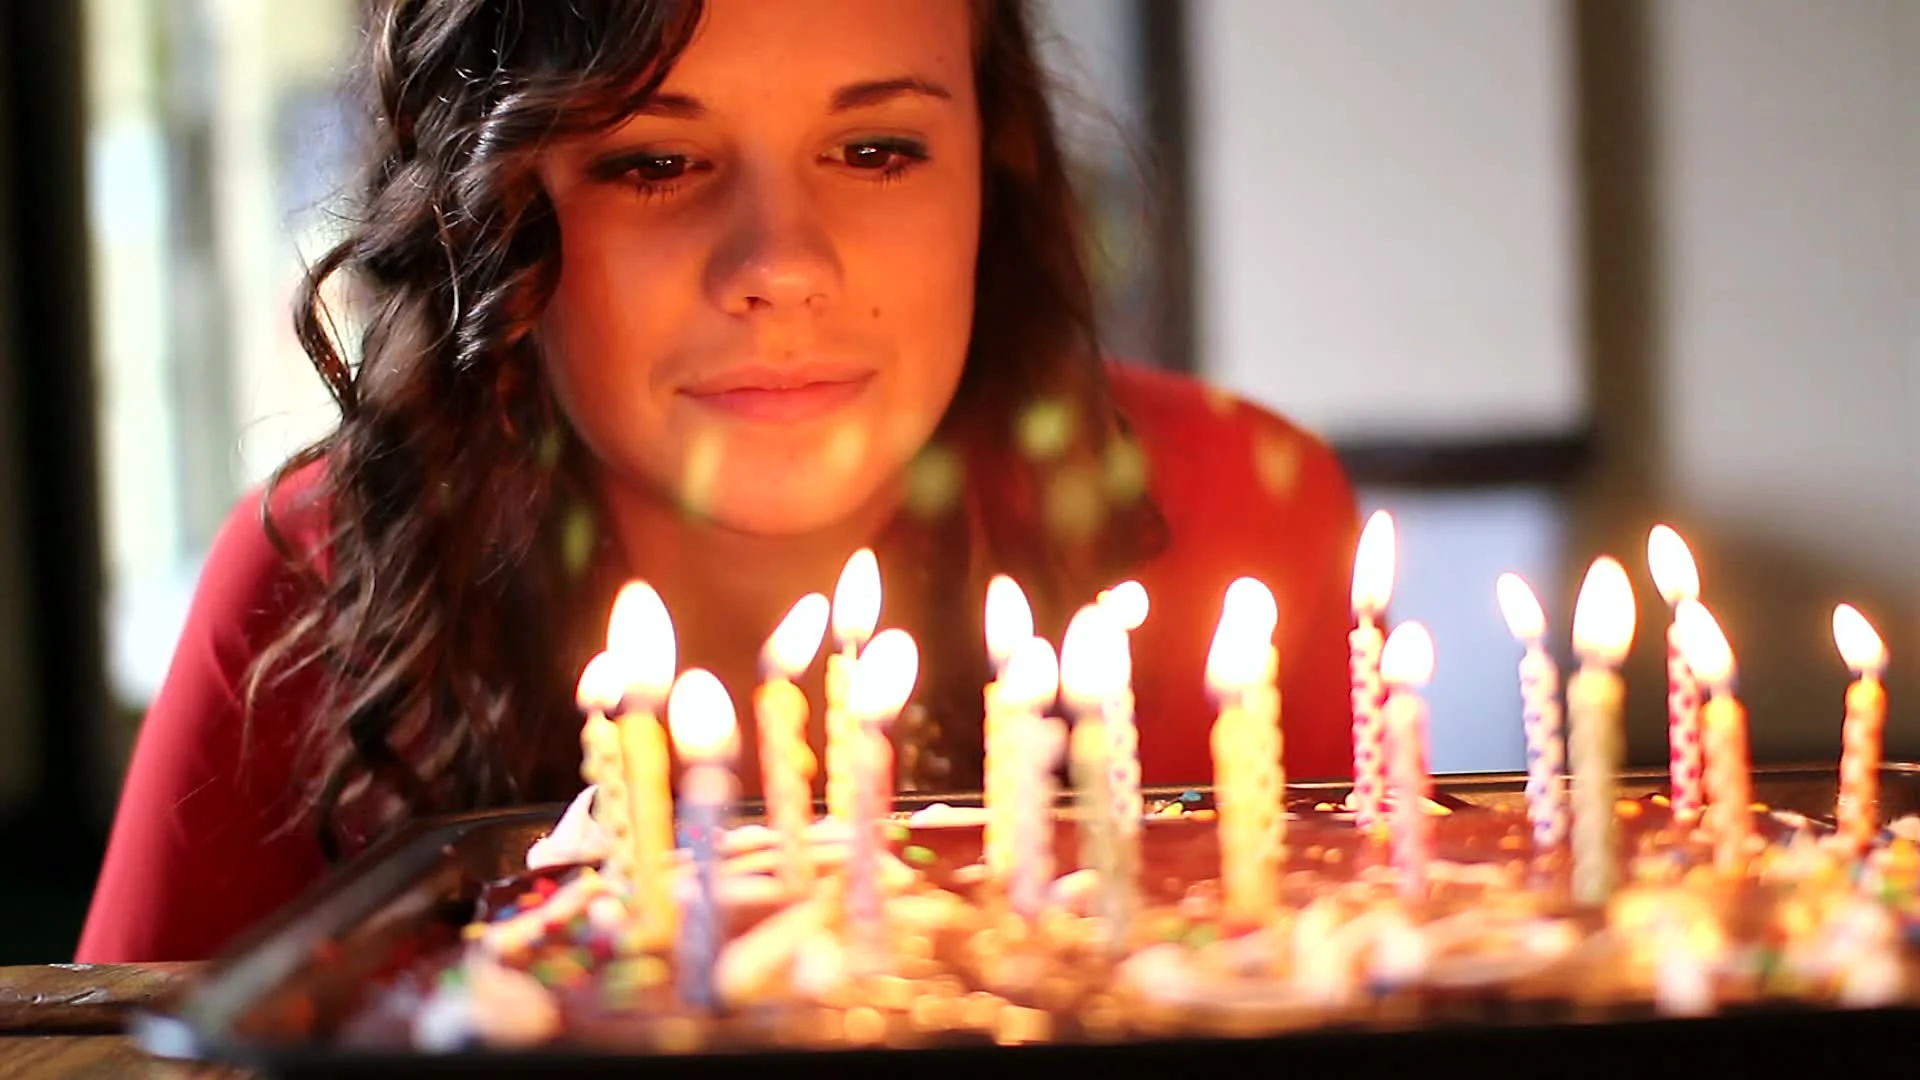 Днем рождения заранее. Задувание свечей на торте. Левушка с тортом и свечкаии. Девушка и торт со свечами. Задувает свечи на торте.